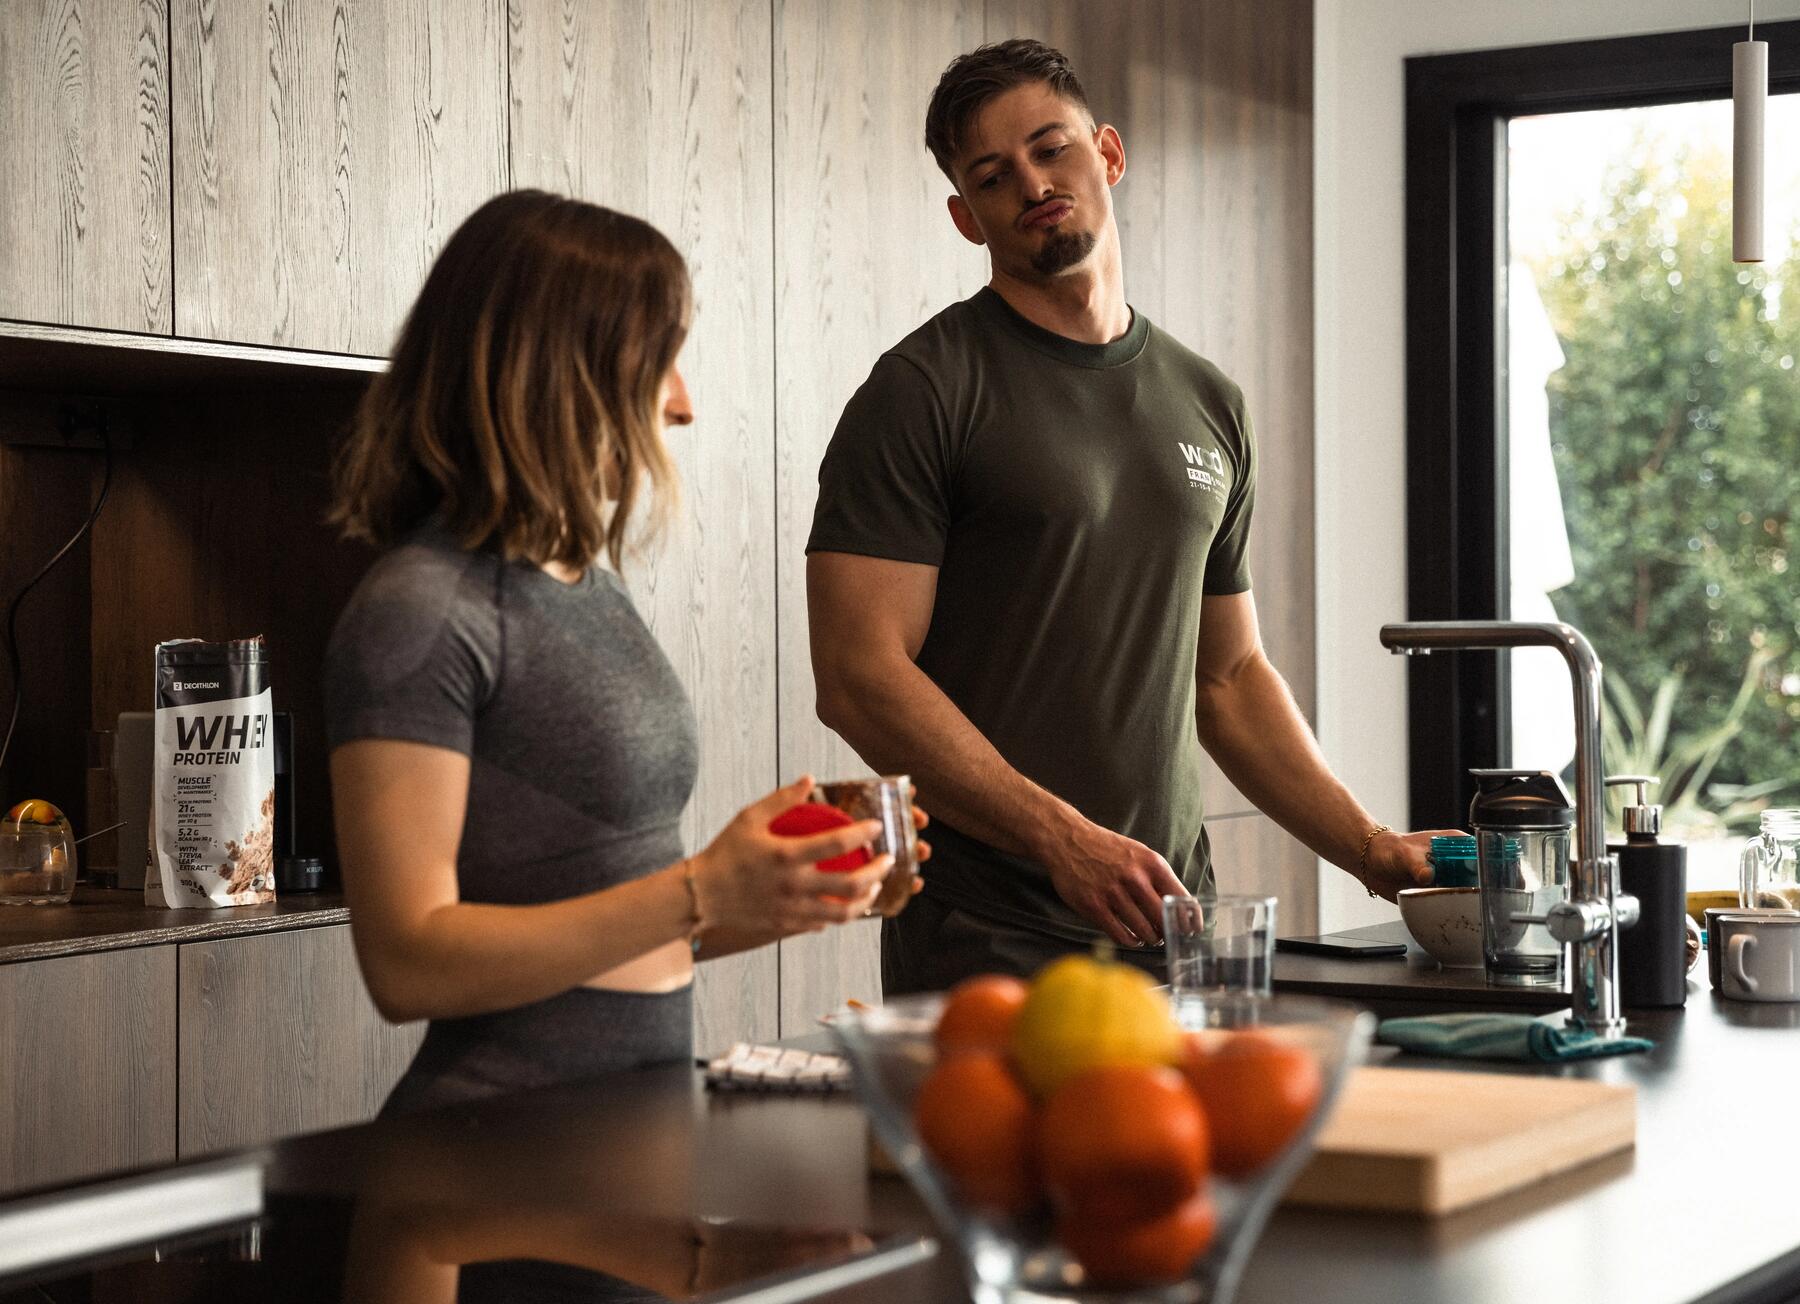 Kobieta i mężczyzna w odzieży sportowej stojący w kuchni przy blacie z miską wypełnioną cytrusami